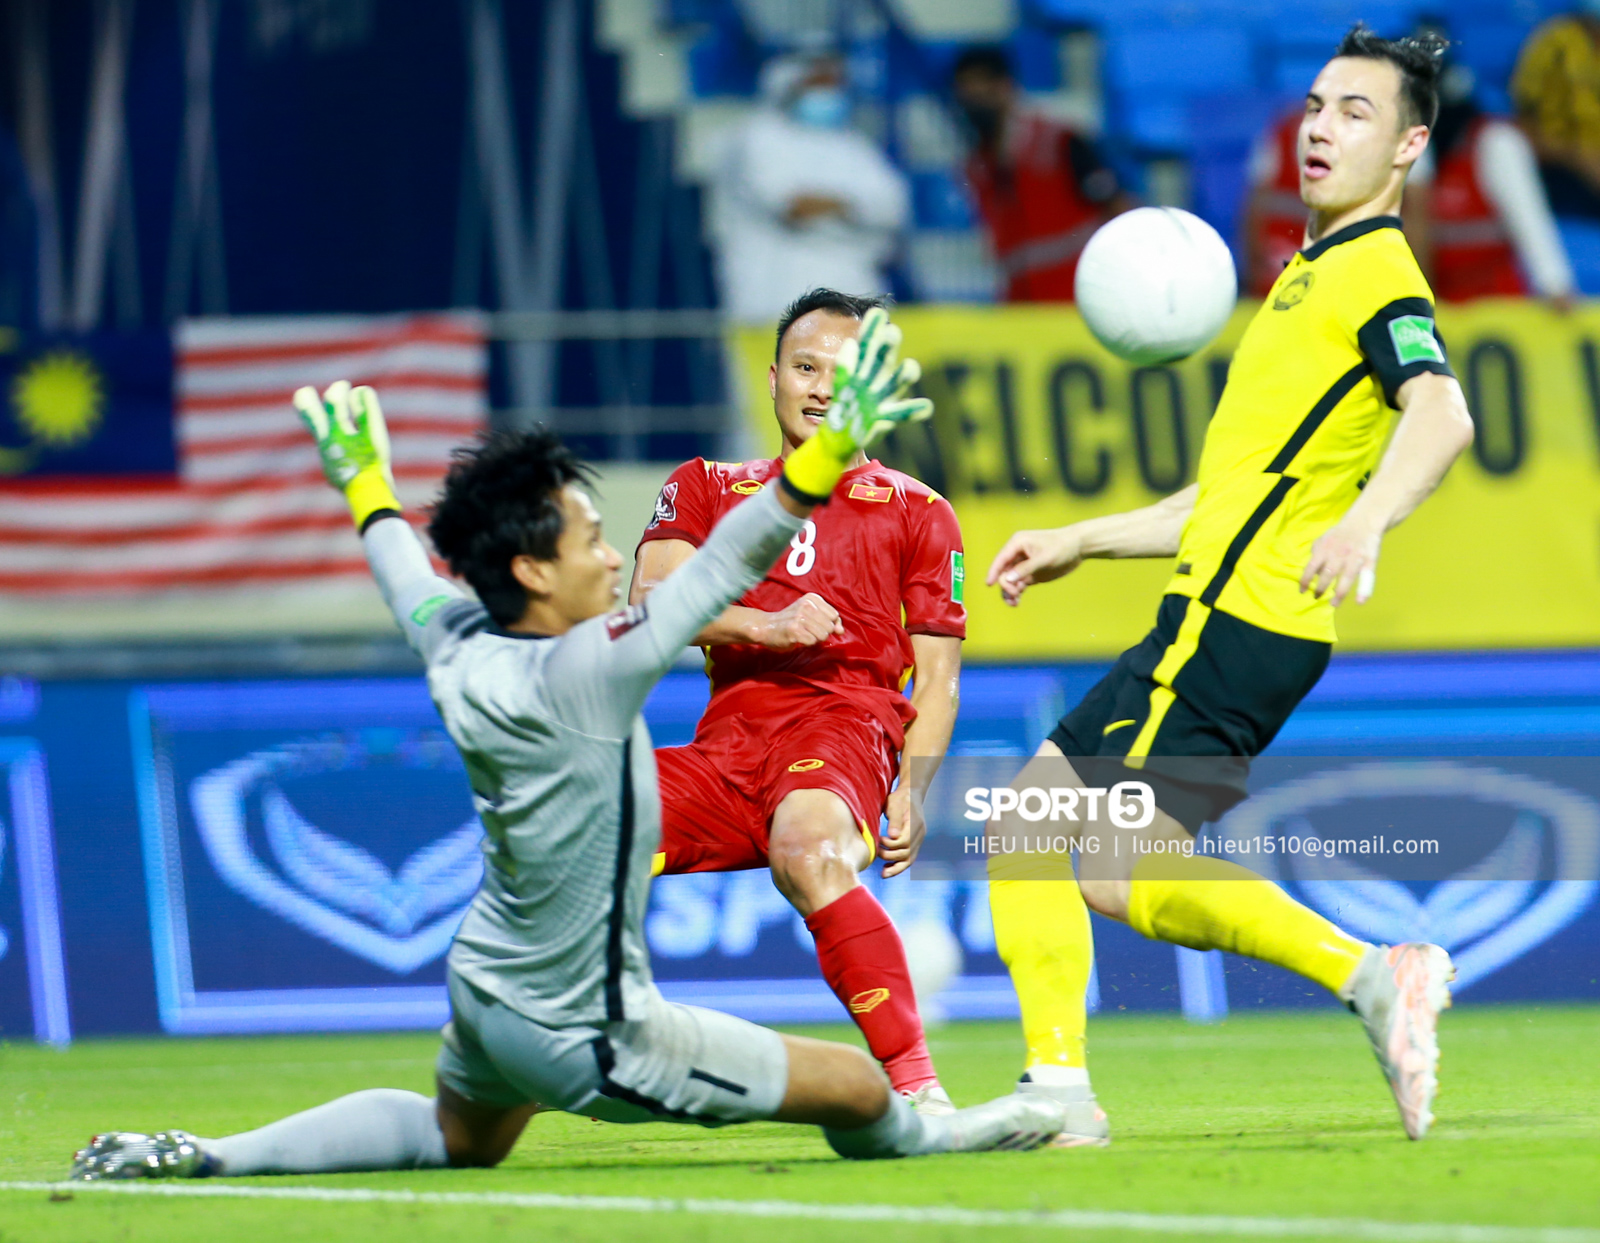 Hoàng Đức chơi hay bất ngờ, thay thế hoàn hảo cho Tuấn Anh ở tuyển Việt Nam - Ảnh 7.